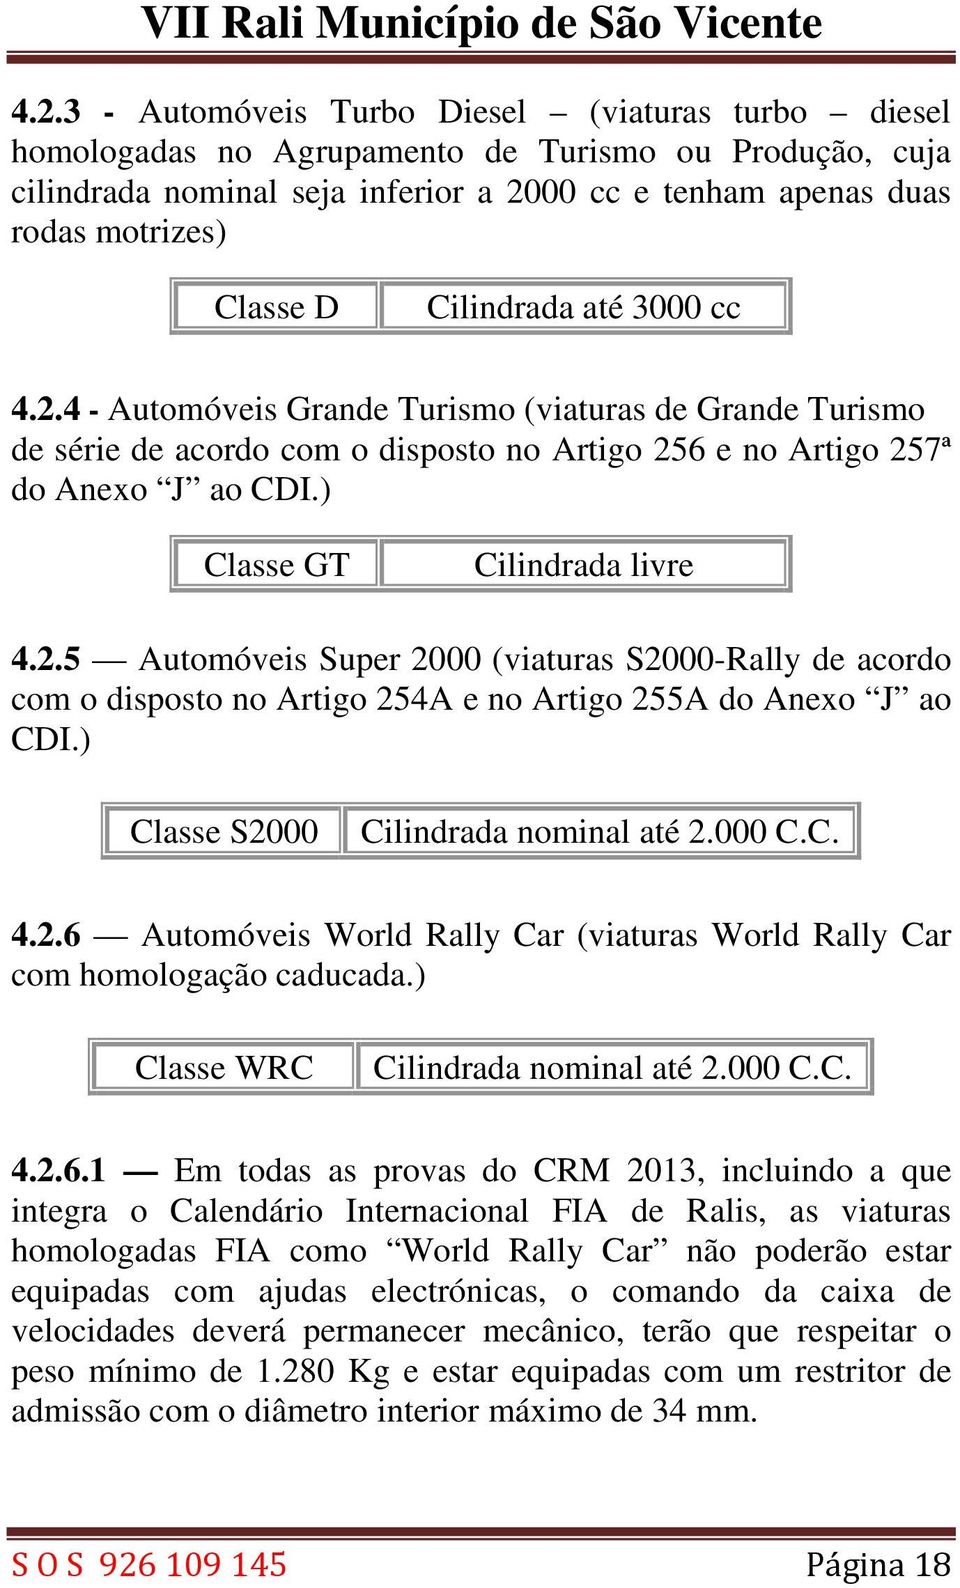 2.5 Automóveis Super 2000 (viaturas S2000-Rally de acordo com o disposto no Artigo 254A e no Artigo 255A do Anexo J ao CDI.) Classe S2000 Cilindrada nominal até 2.000 C.C. 4.2.6 Automóveis World Rally Car (viaturas World Rally Car com homologação caducada.